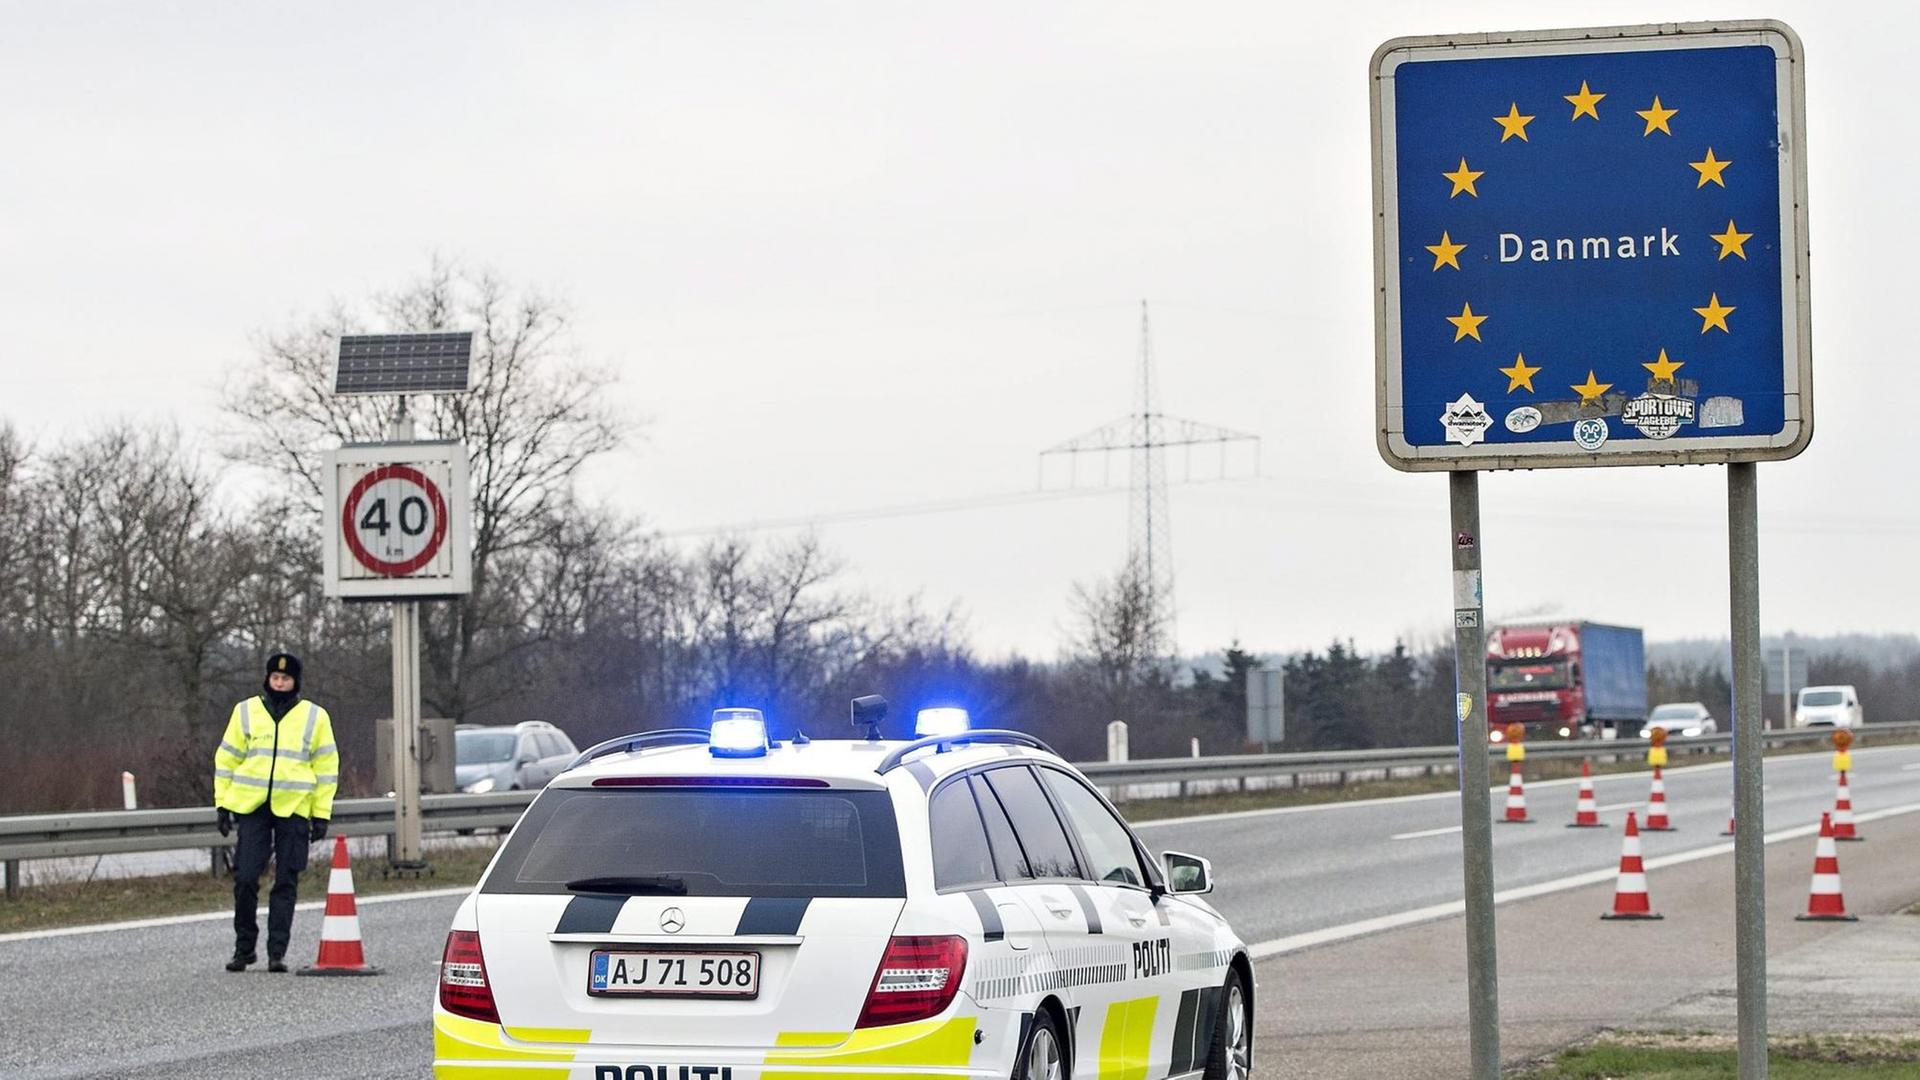 Dänemark hat temporäre Kontrollen an der Grenze zu Deutschland eingeführt.